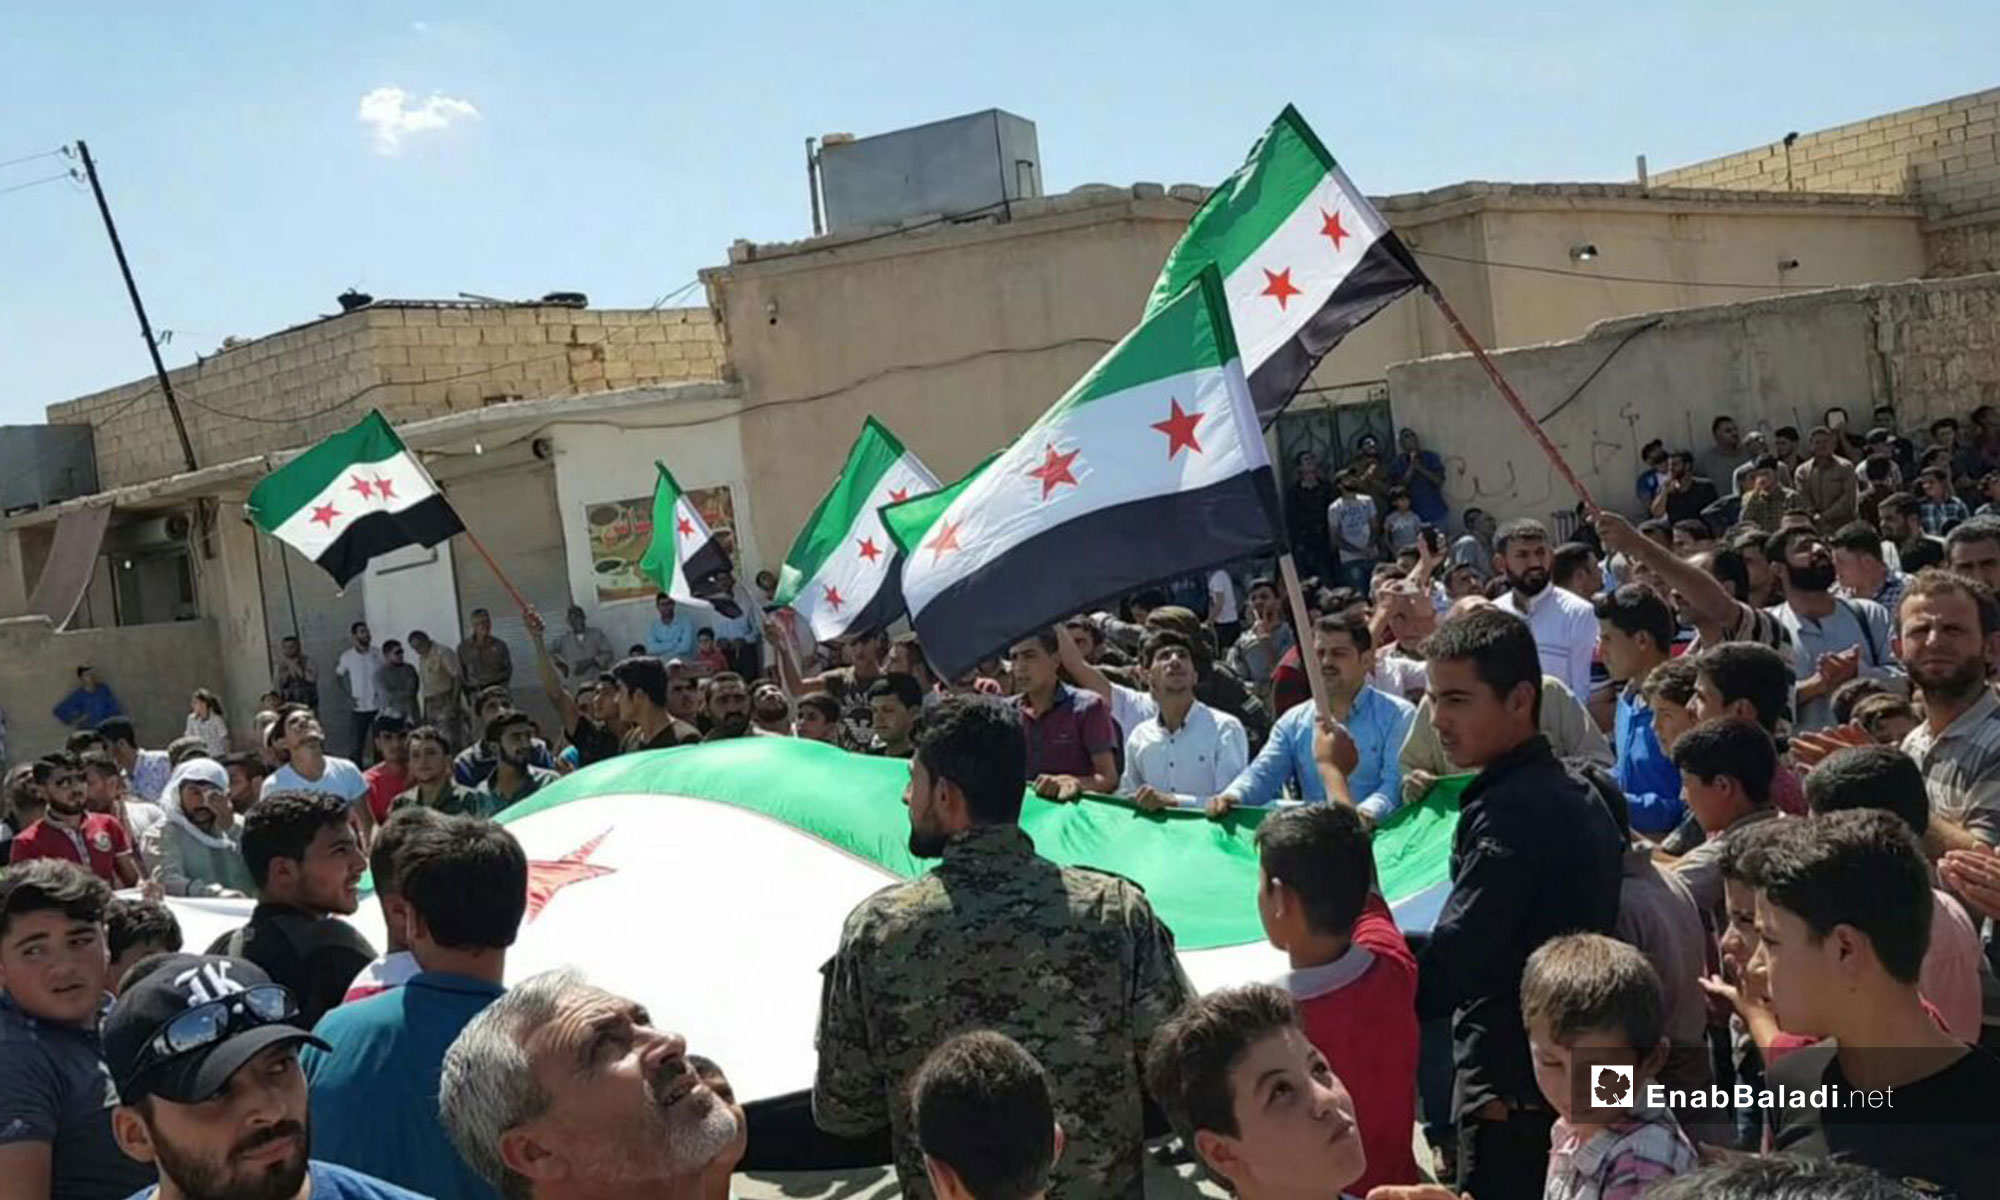 مظاهرة في بلدة أخترين بريف حلب رفضًا للتدخل الروسي في إدلب - 7 من أيلول 2018 (عنب بلدي)